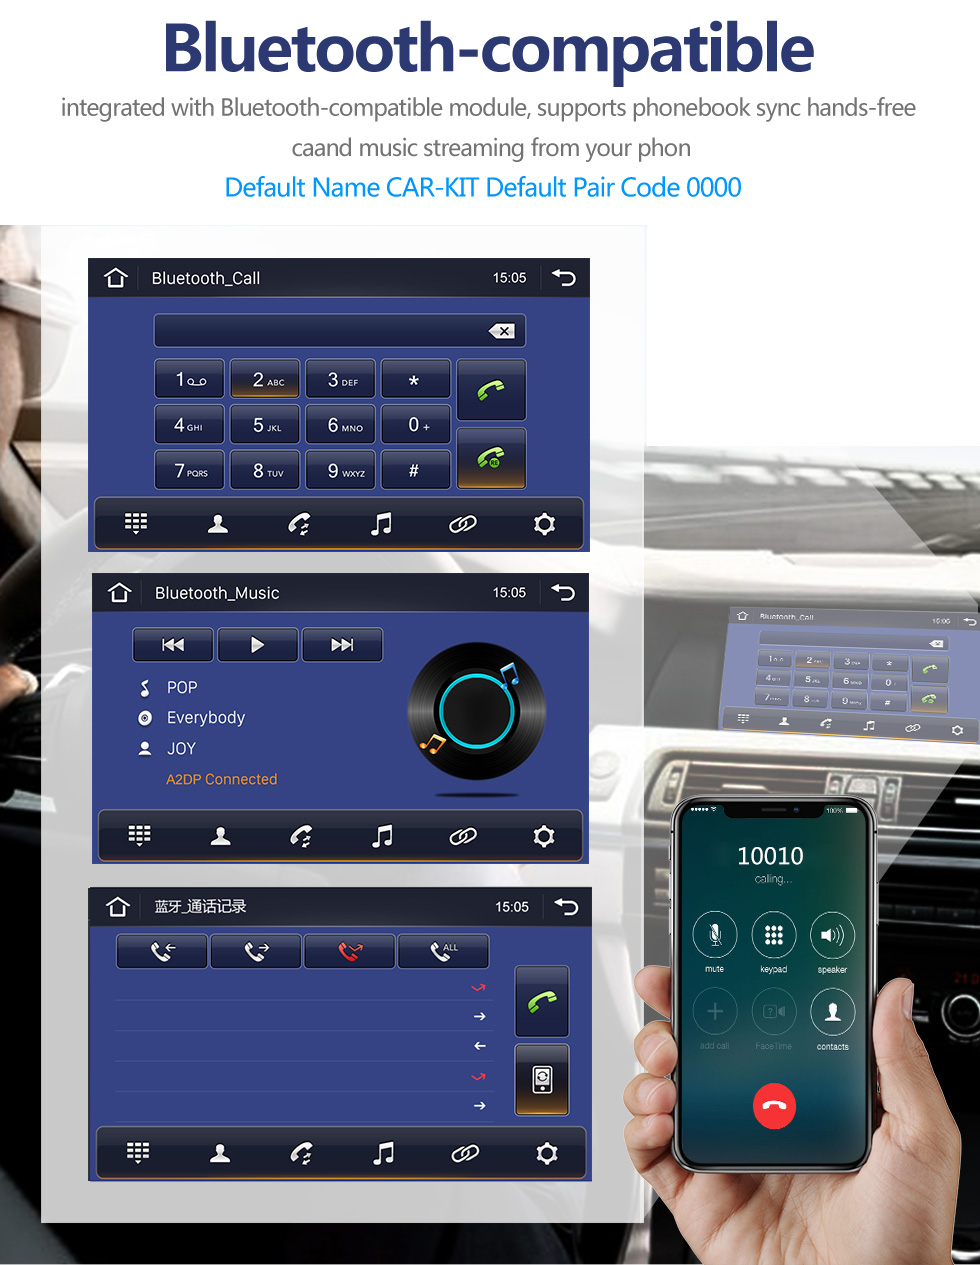 Seicane 10,1 pouces Android 10.0 HD Écran tactile pour 2010 AUDI A4 LHD avec prise en charge Carplay DSP intégrée Commande au volant Caméra AHD WIFI 4G